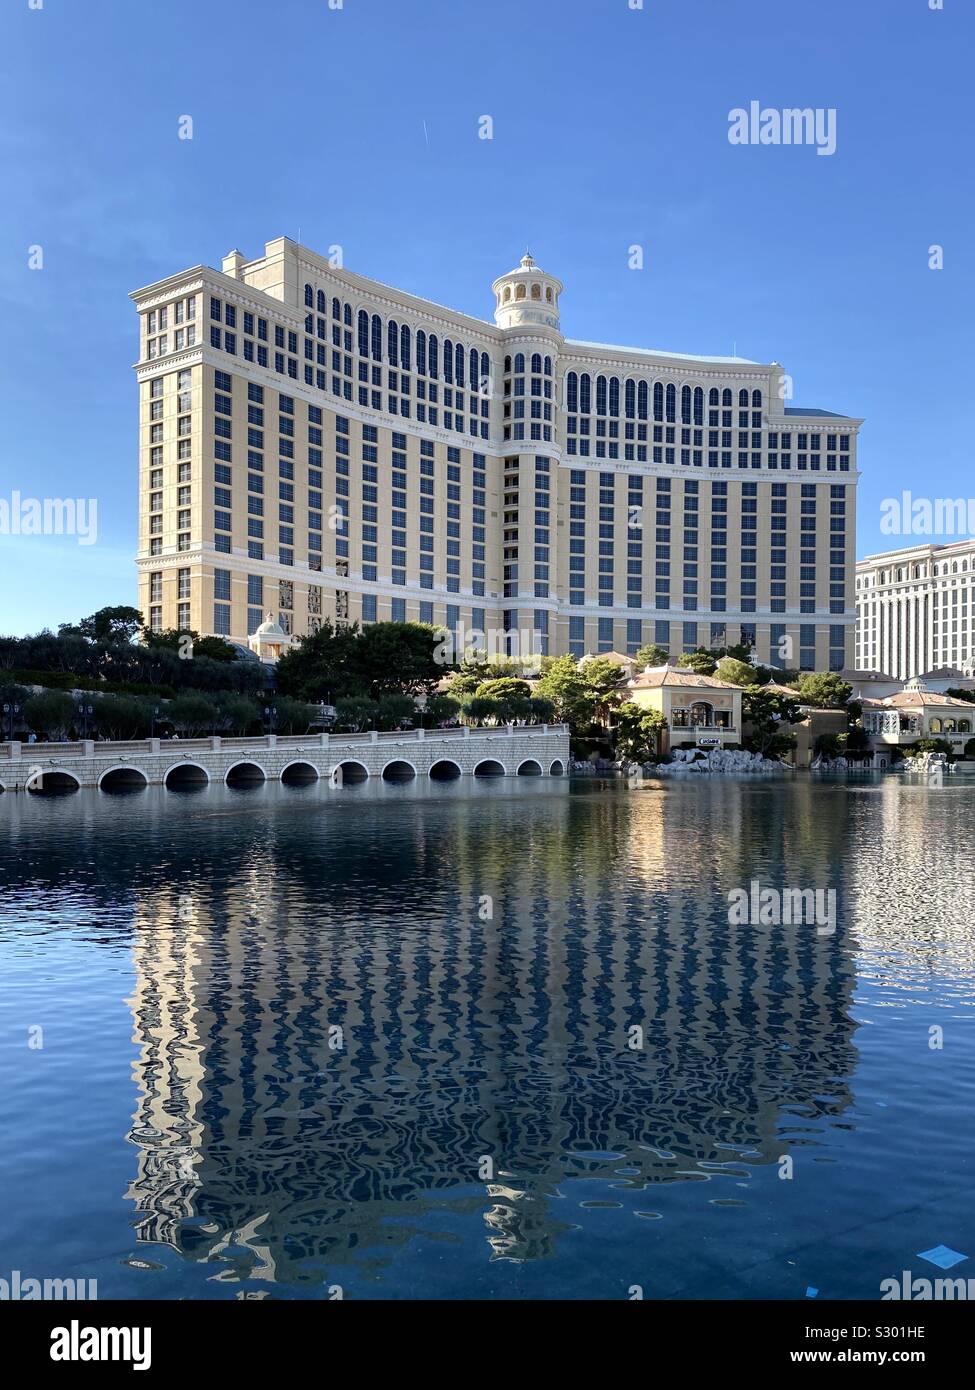 Avis de Bellagio à Las Vegas avec les réflexions de l'édifice, sur l'eau Banque D'Images